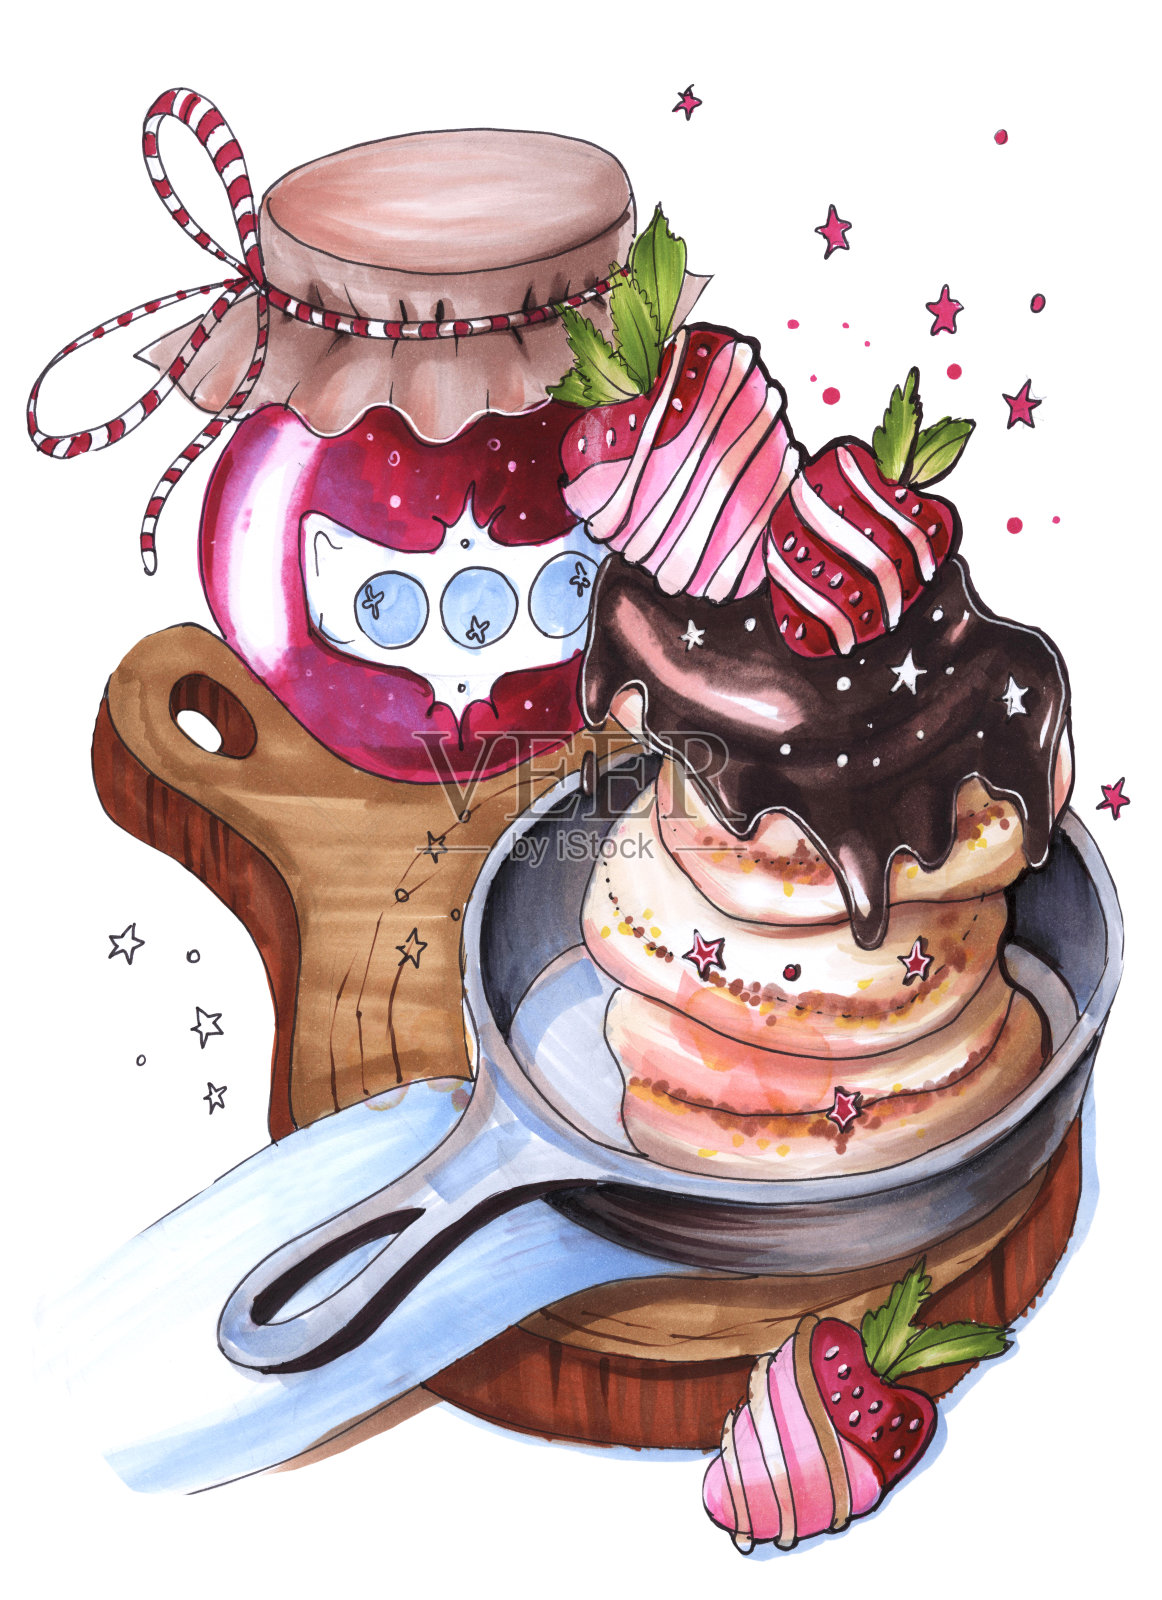 雅米在一个罐子里画素描，用水彩画食物、早餐、奶酪蛋糕和煎饼，还有巧克力覆盖的草莓和果酱插画图片素材